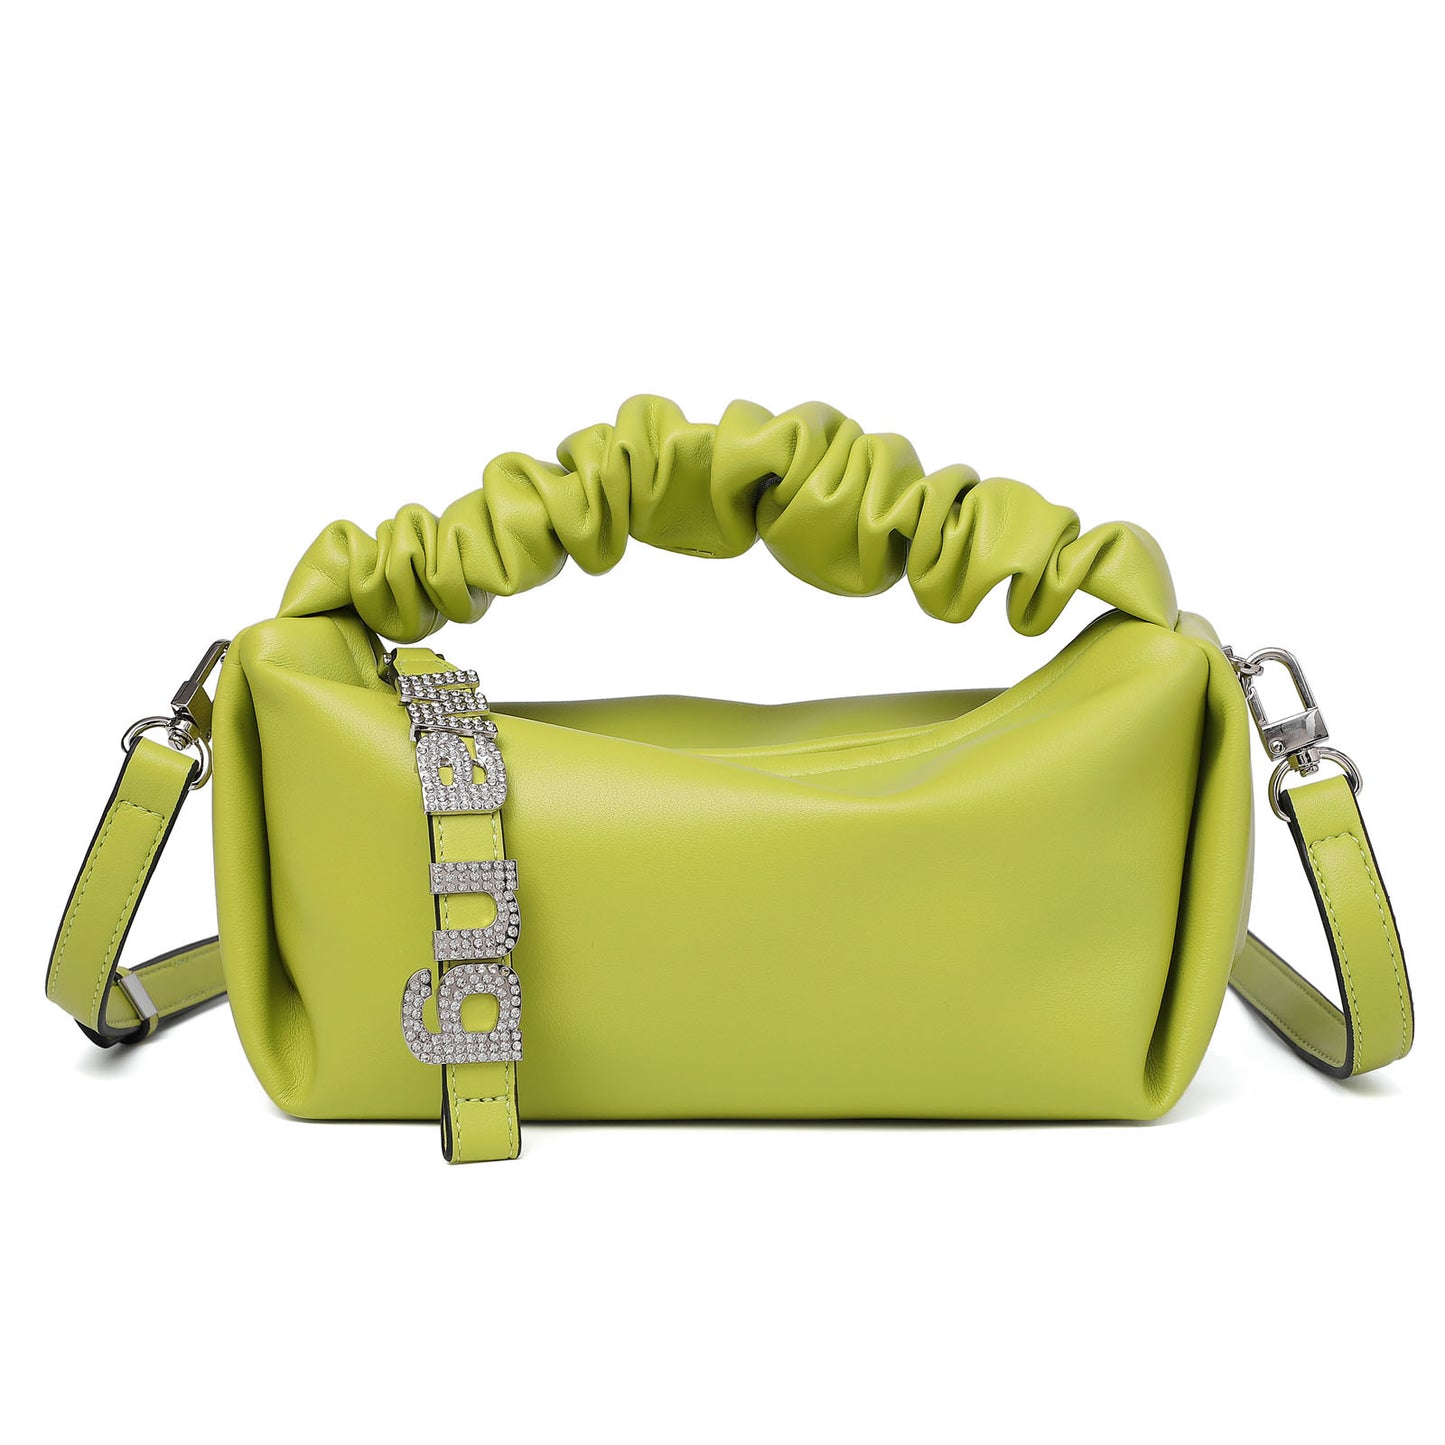 Small Shoulder Handbag for Women, Soft Designer Cloud Pouch Bag Lightweight Crossbody Clutch Purse